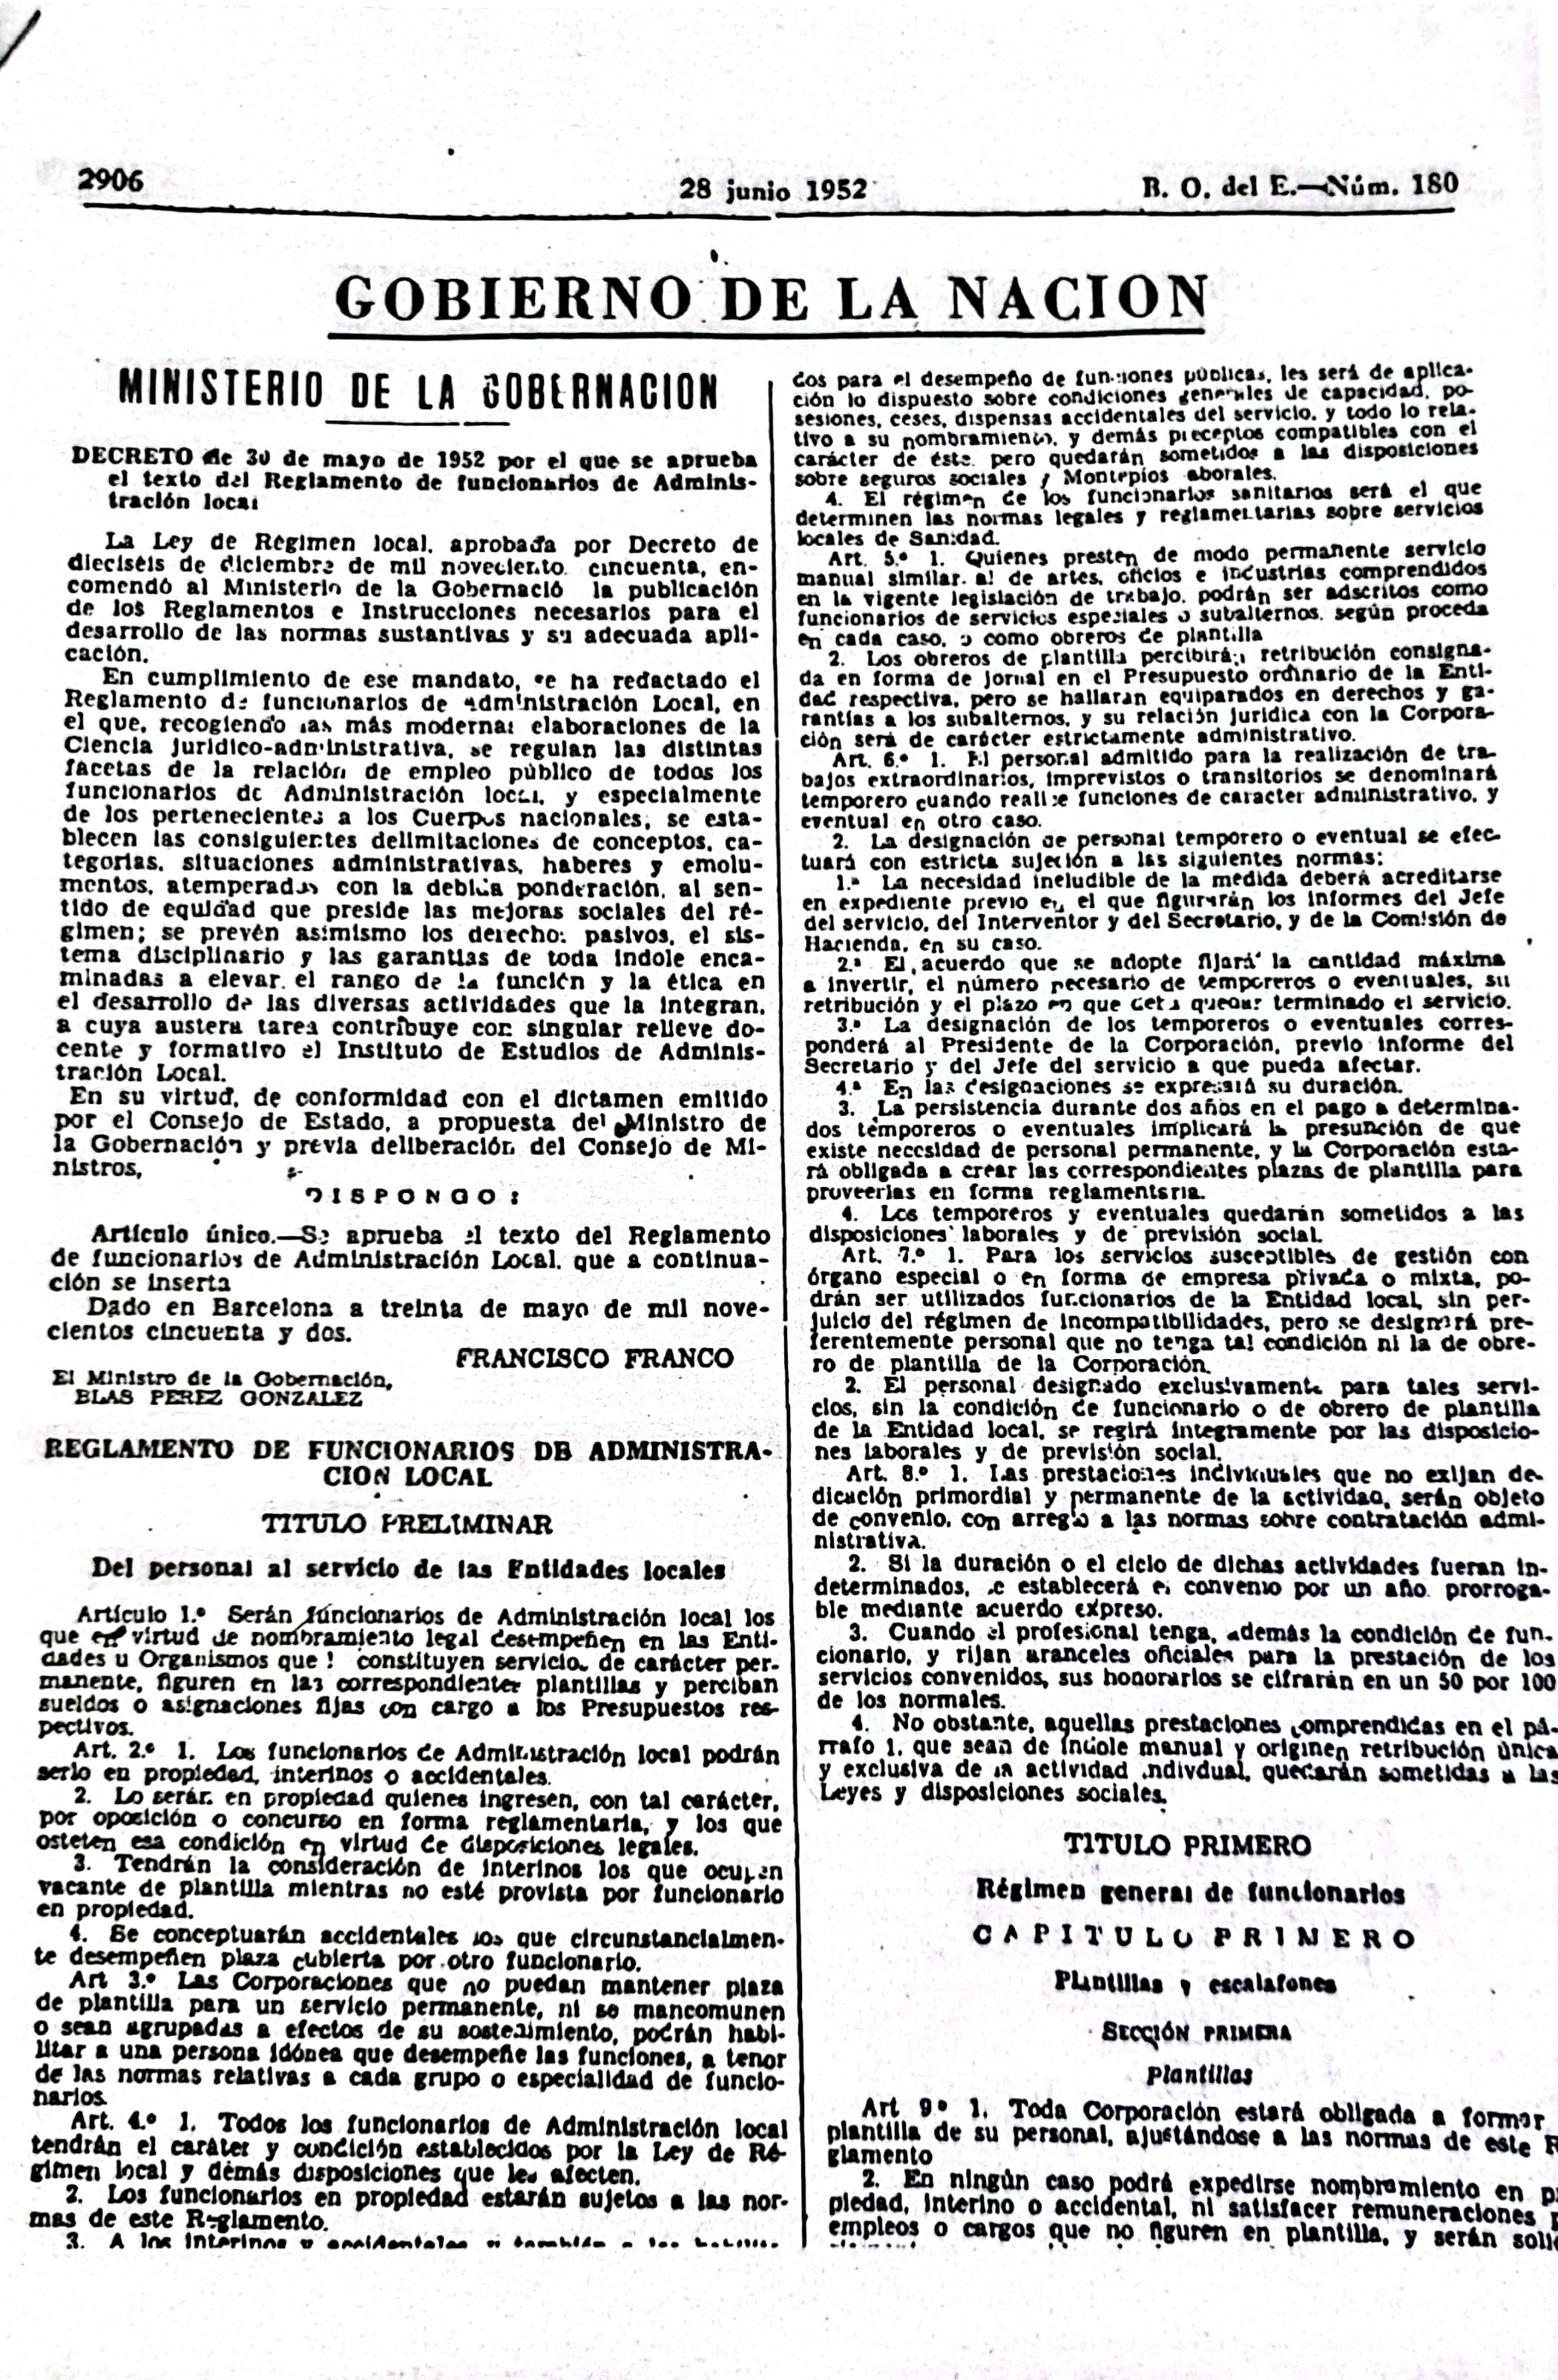 Página 1 del decreto de 1952